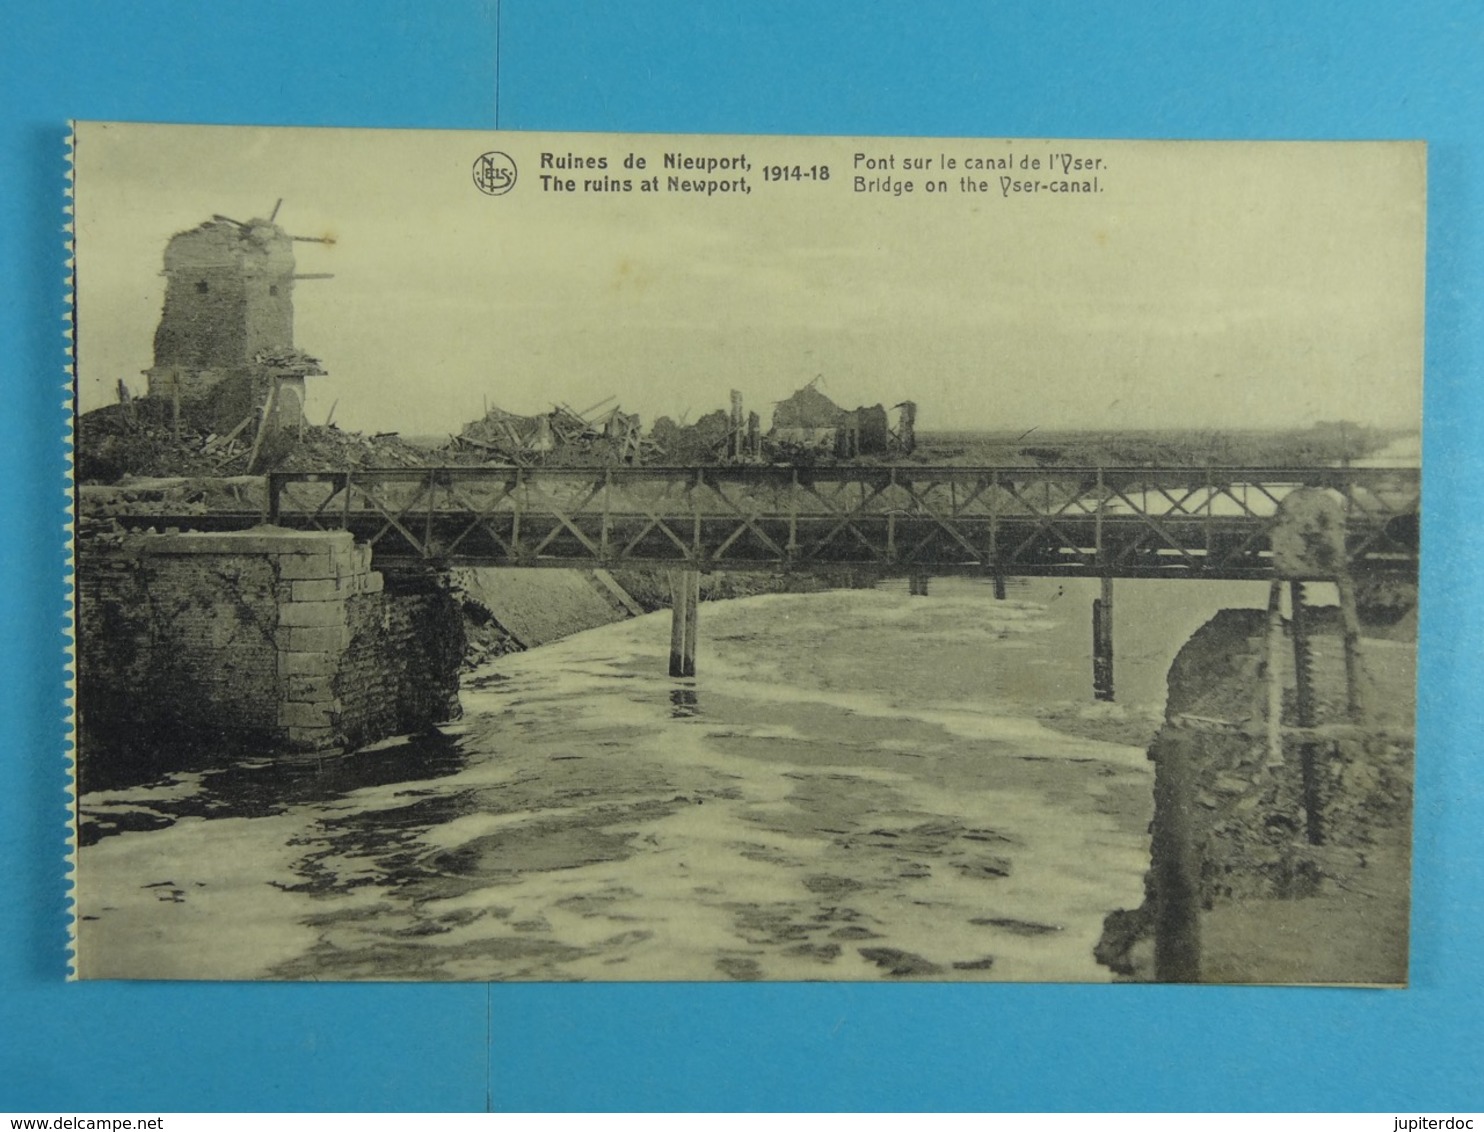 Ruines De Nieuport 1914-18 Pont Sur Le Canal D L'Yser - Nieuwpoort